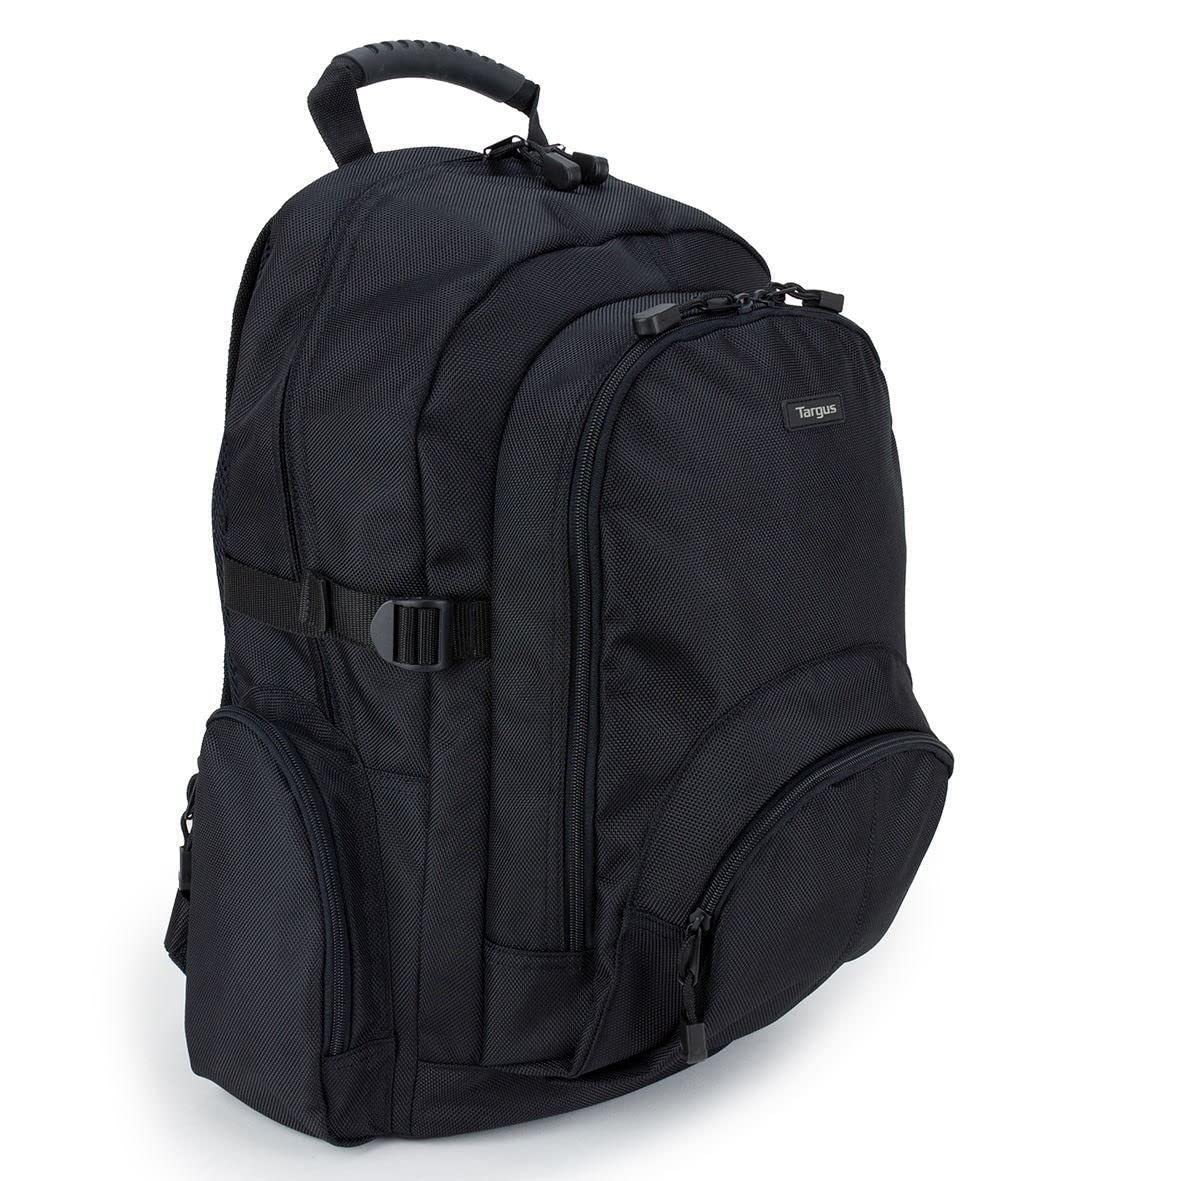 Targus CN600 Laptop-Rucksack, leicht, mit 20 l Fassungsvermögen, mehreren Taschen, gepolstertem Fach, passend für Laptops bis zu 16 Zoll – Schwarz